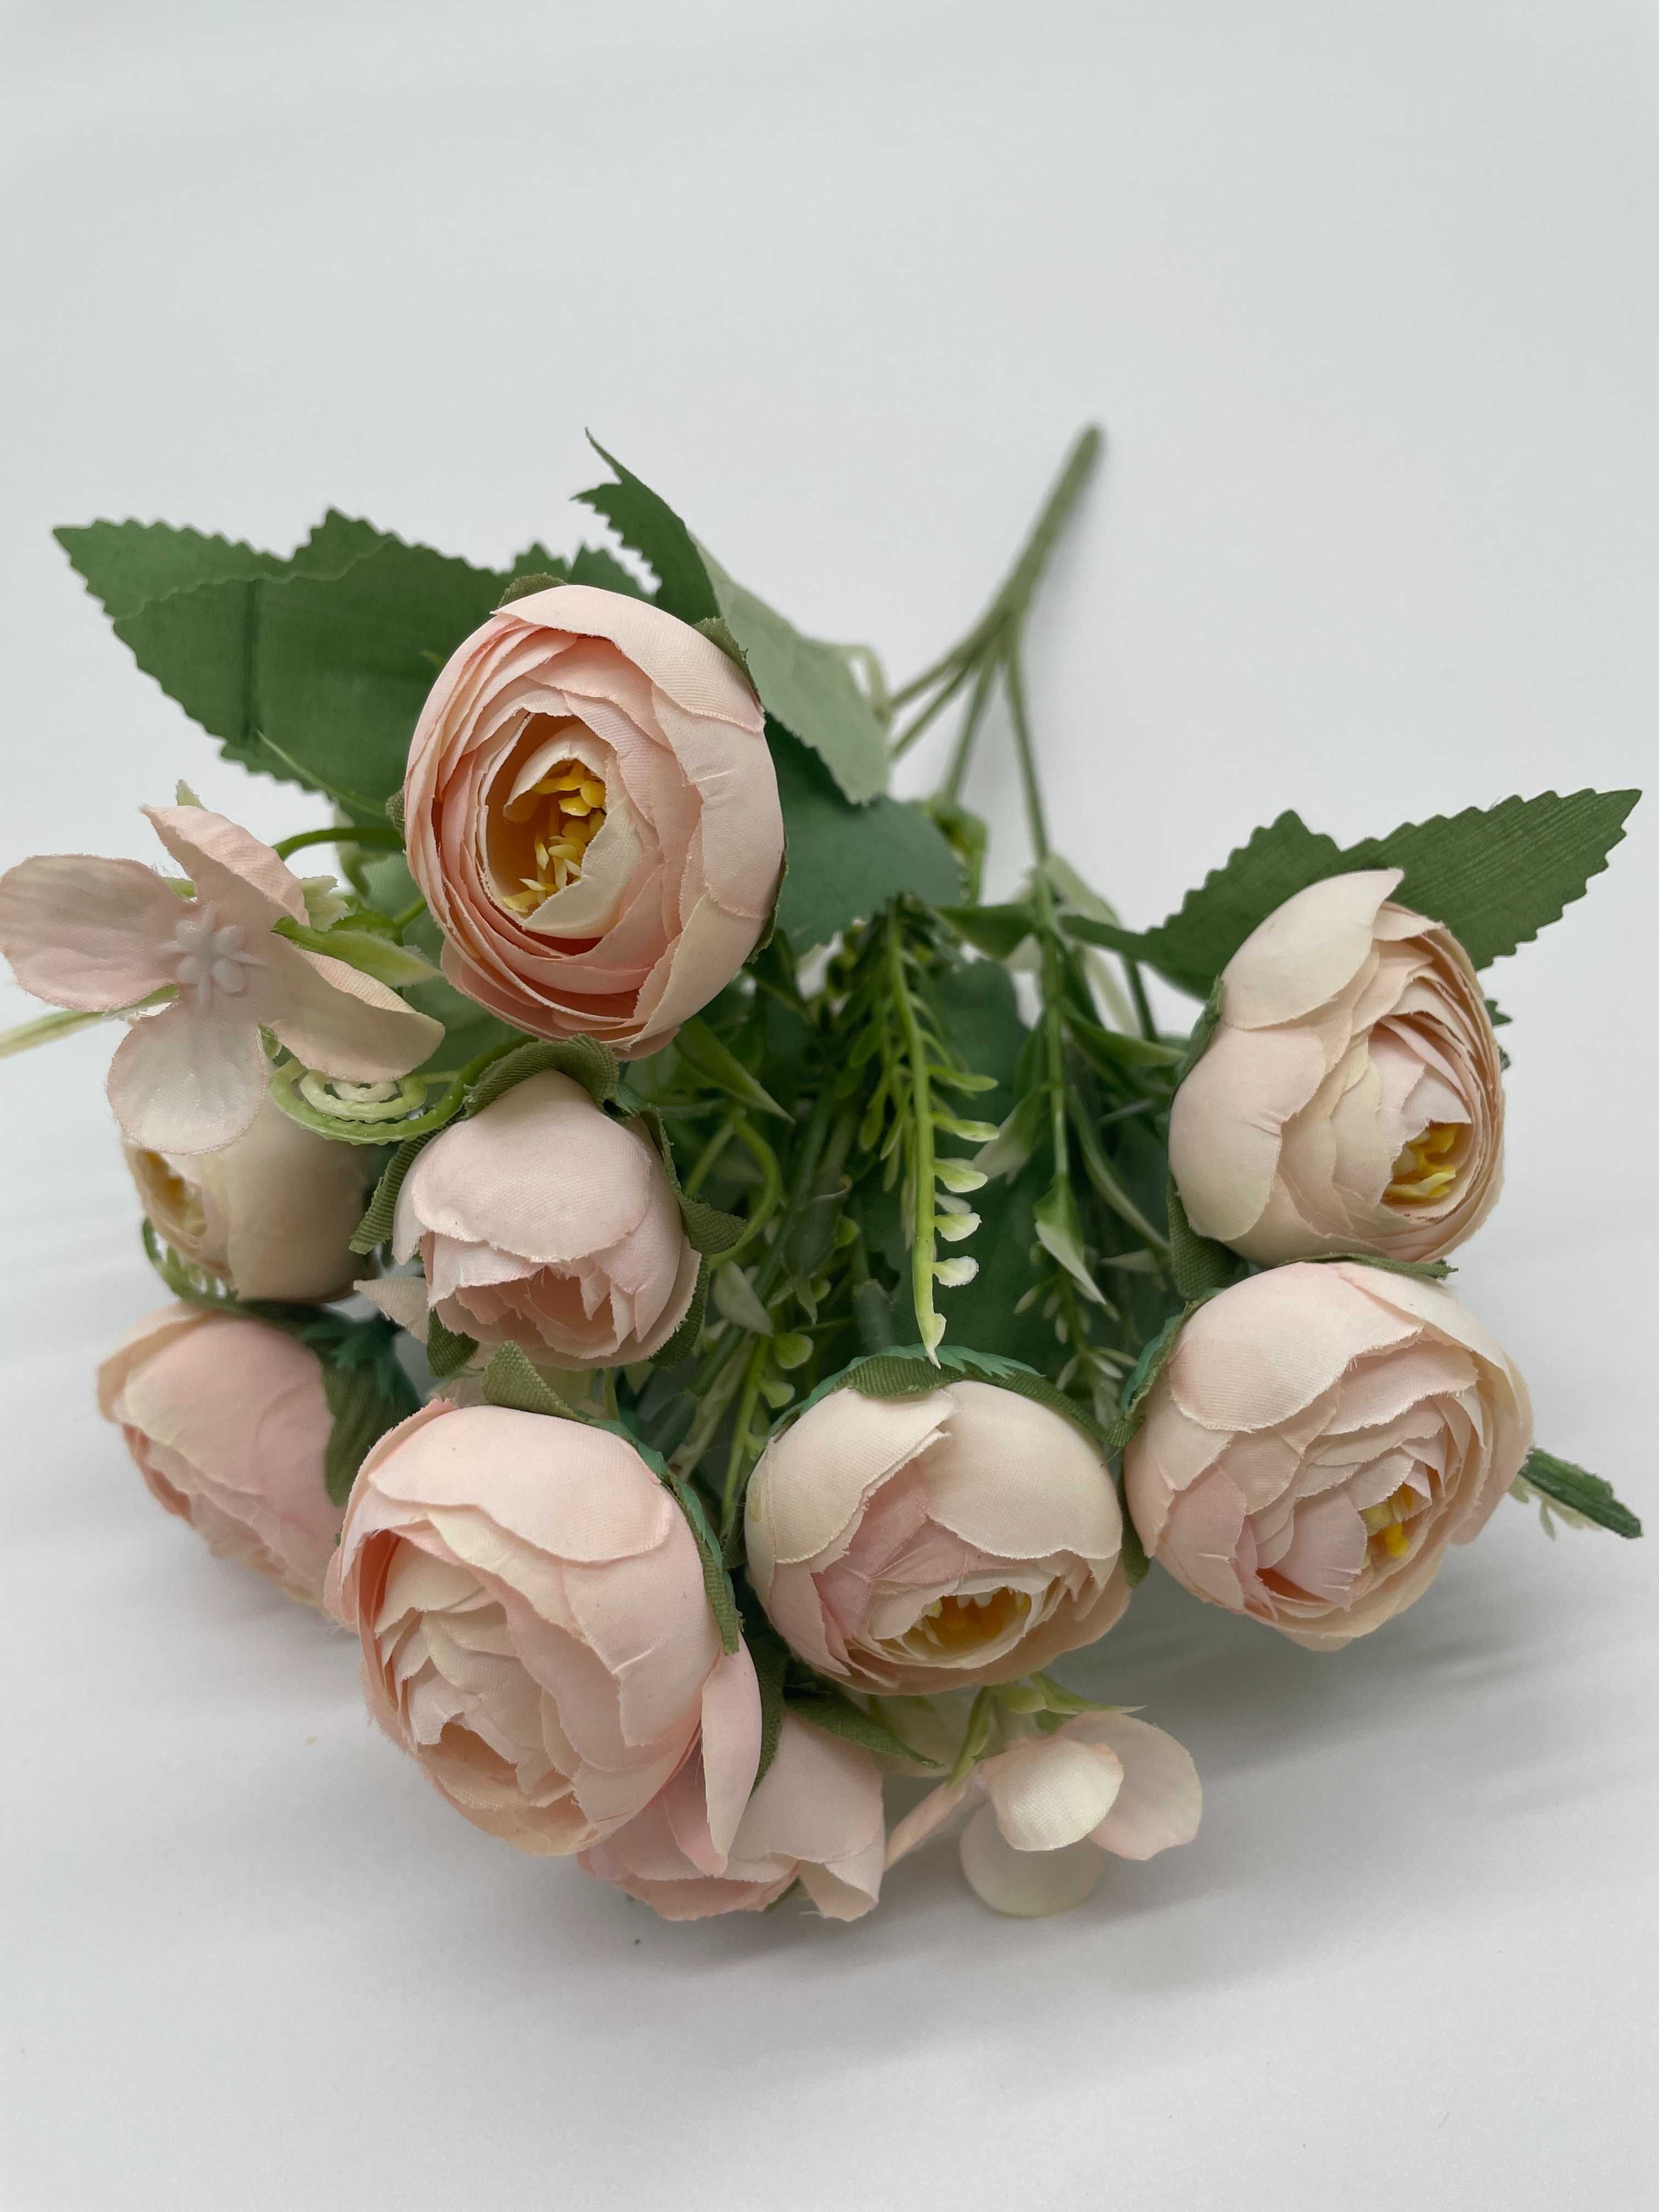 Mini Bukiet Róży Herbacianej Kolor JASNY RÓŻ